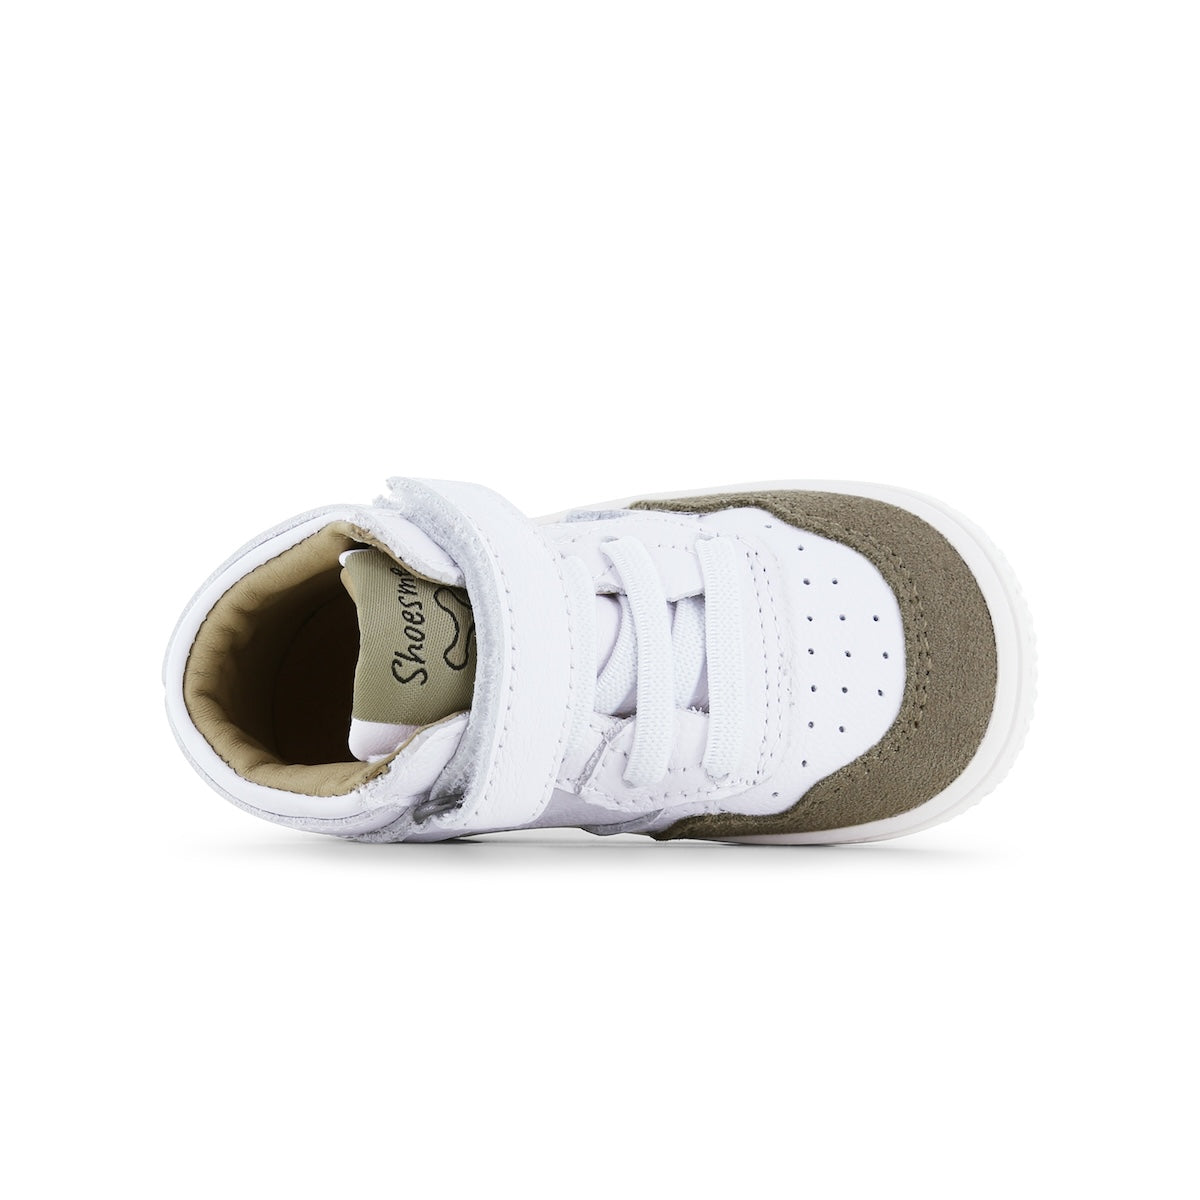 De Shoesme baby sneaker white taupe is perfect als je op zoek bent naar babyschoenen die er super leuk uit zien en tegelijkertijd ook goede ondersteuning bieden bij de eerste stapjes. VanZus.